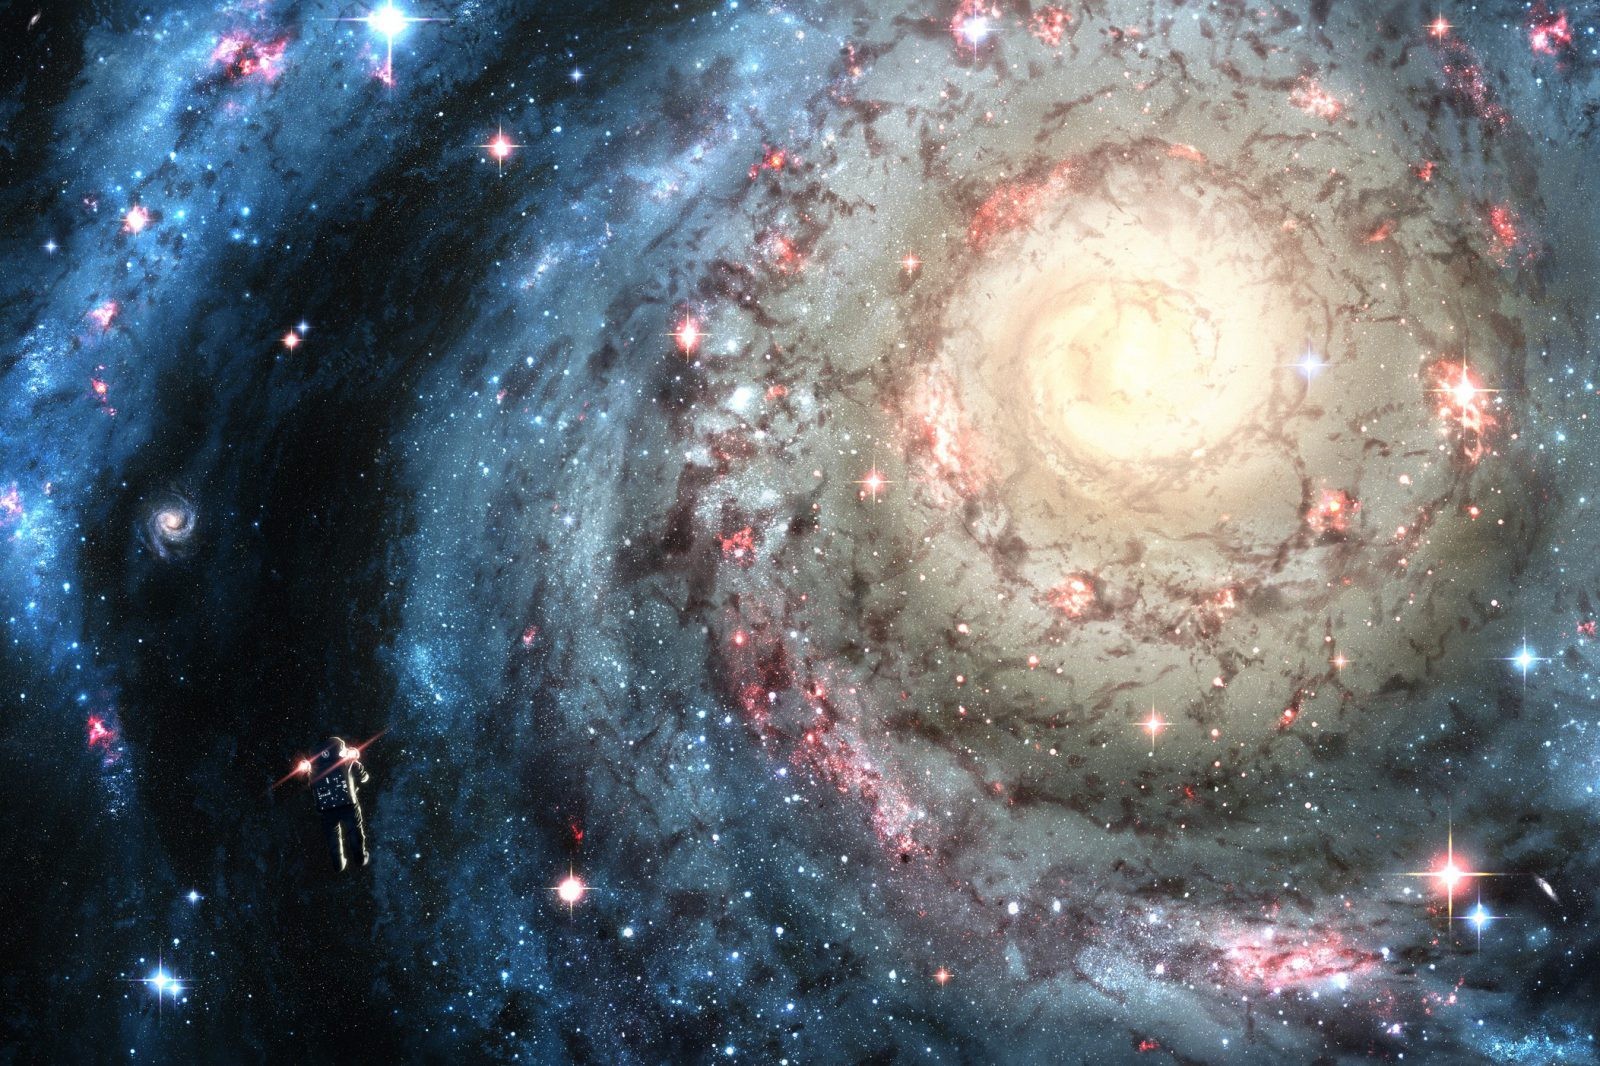 Nowa symulacja pokazuje, jak obcy mogli skolonizować galaktykę i gdzie szukać pozaziemskich cywilizacji